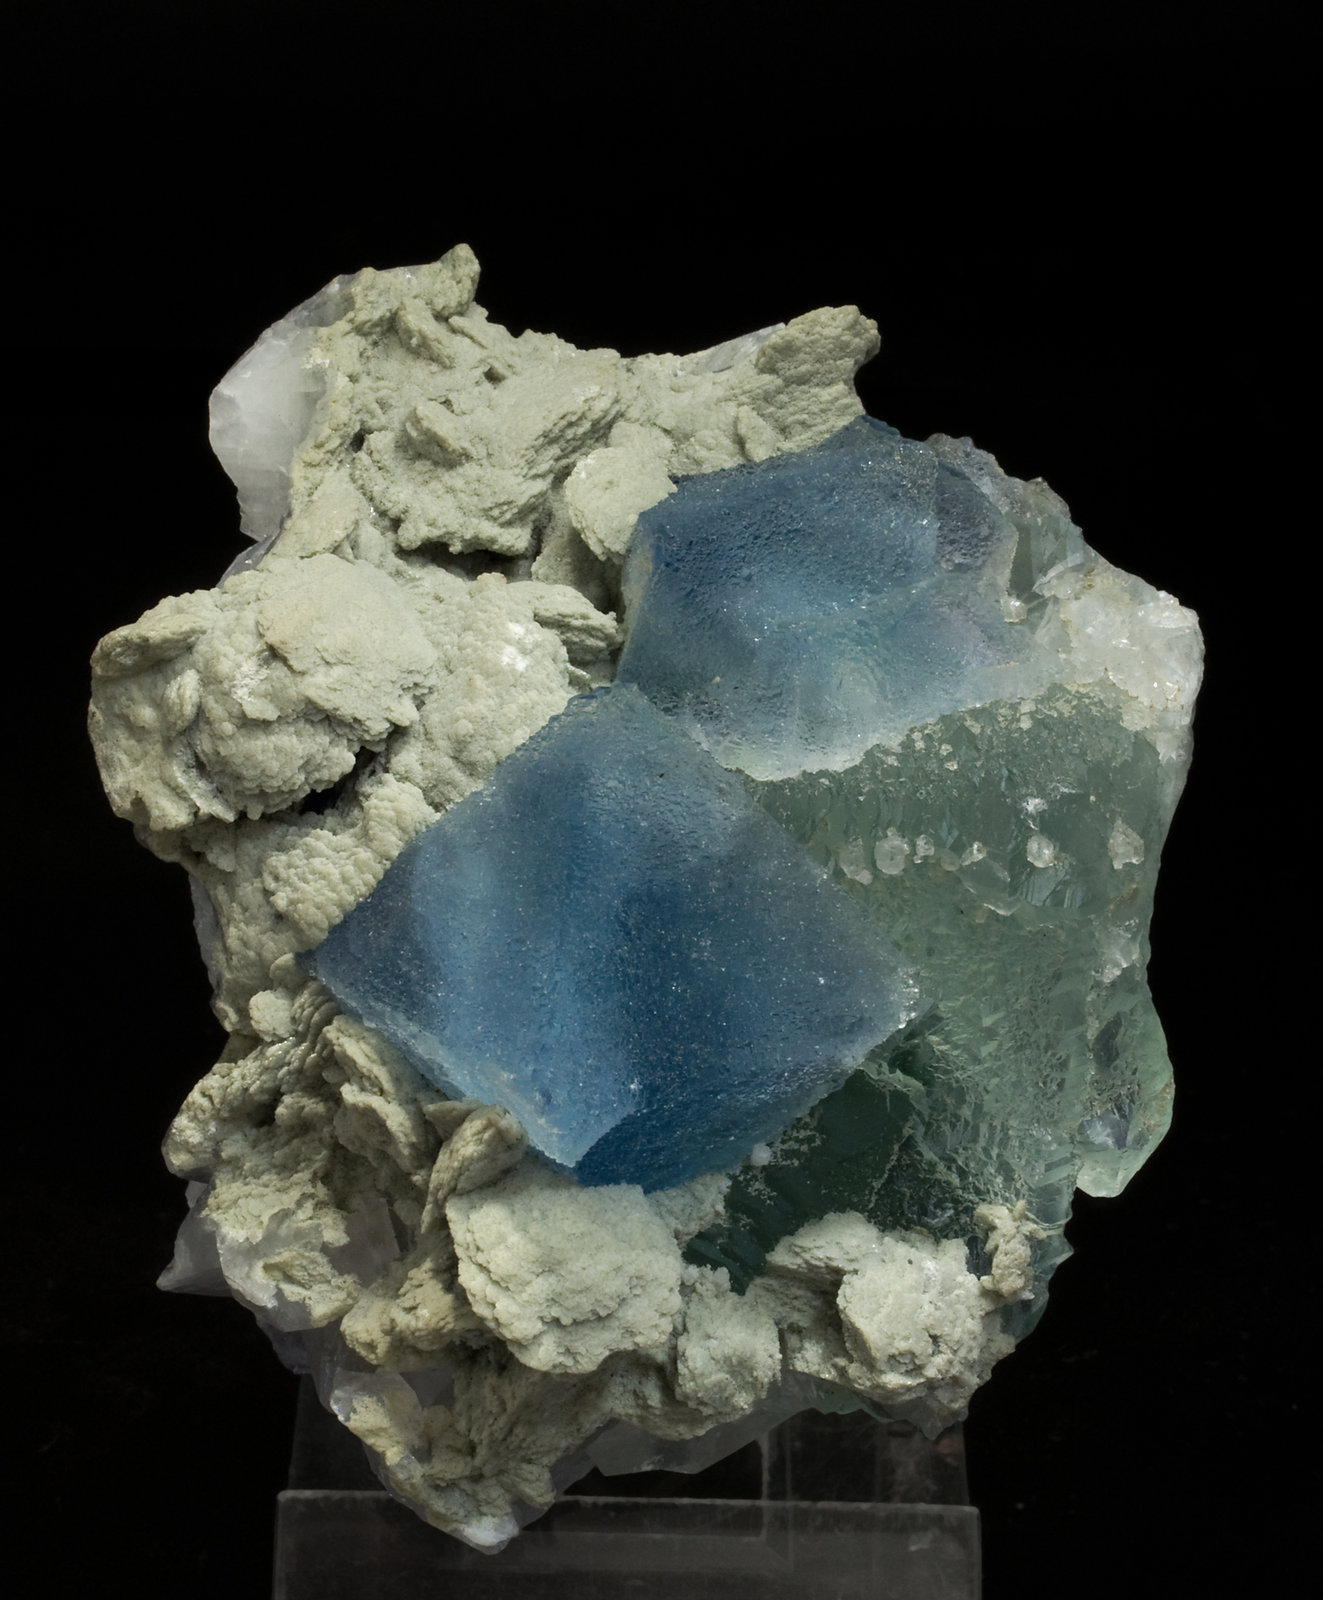 specimens/s_imagesW0/Fluorite-JJ89W0s.jpg